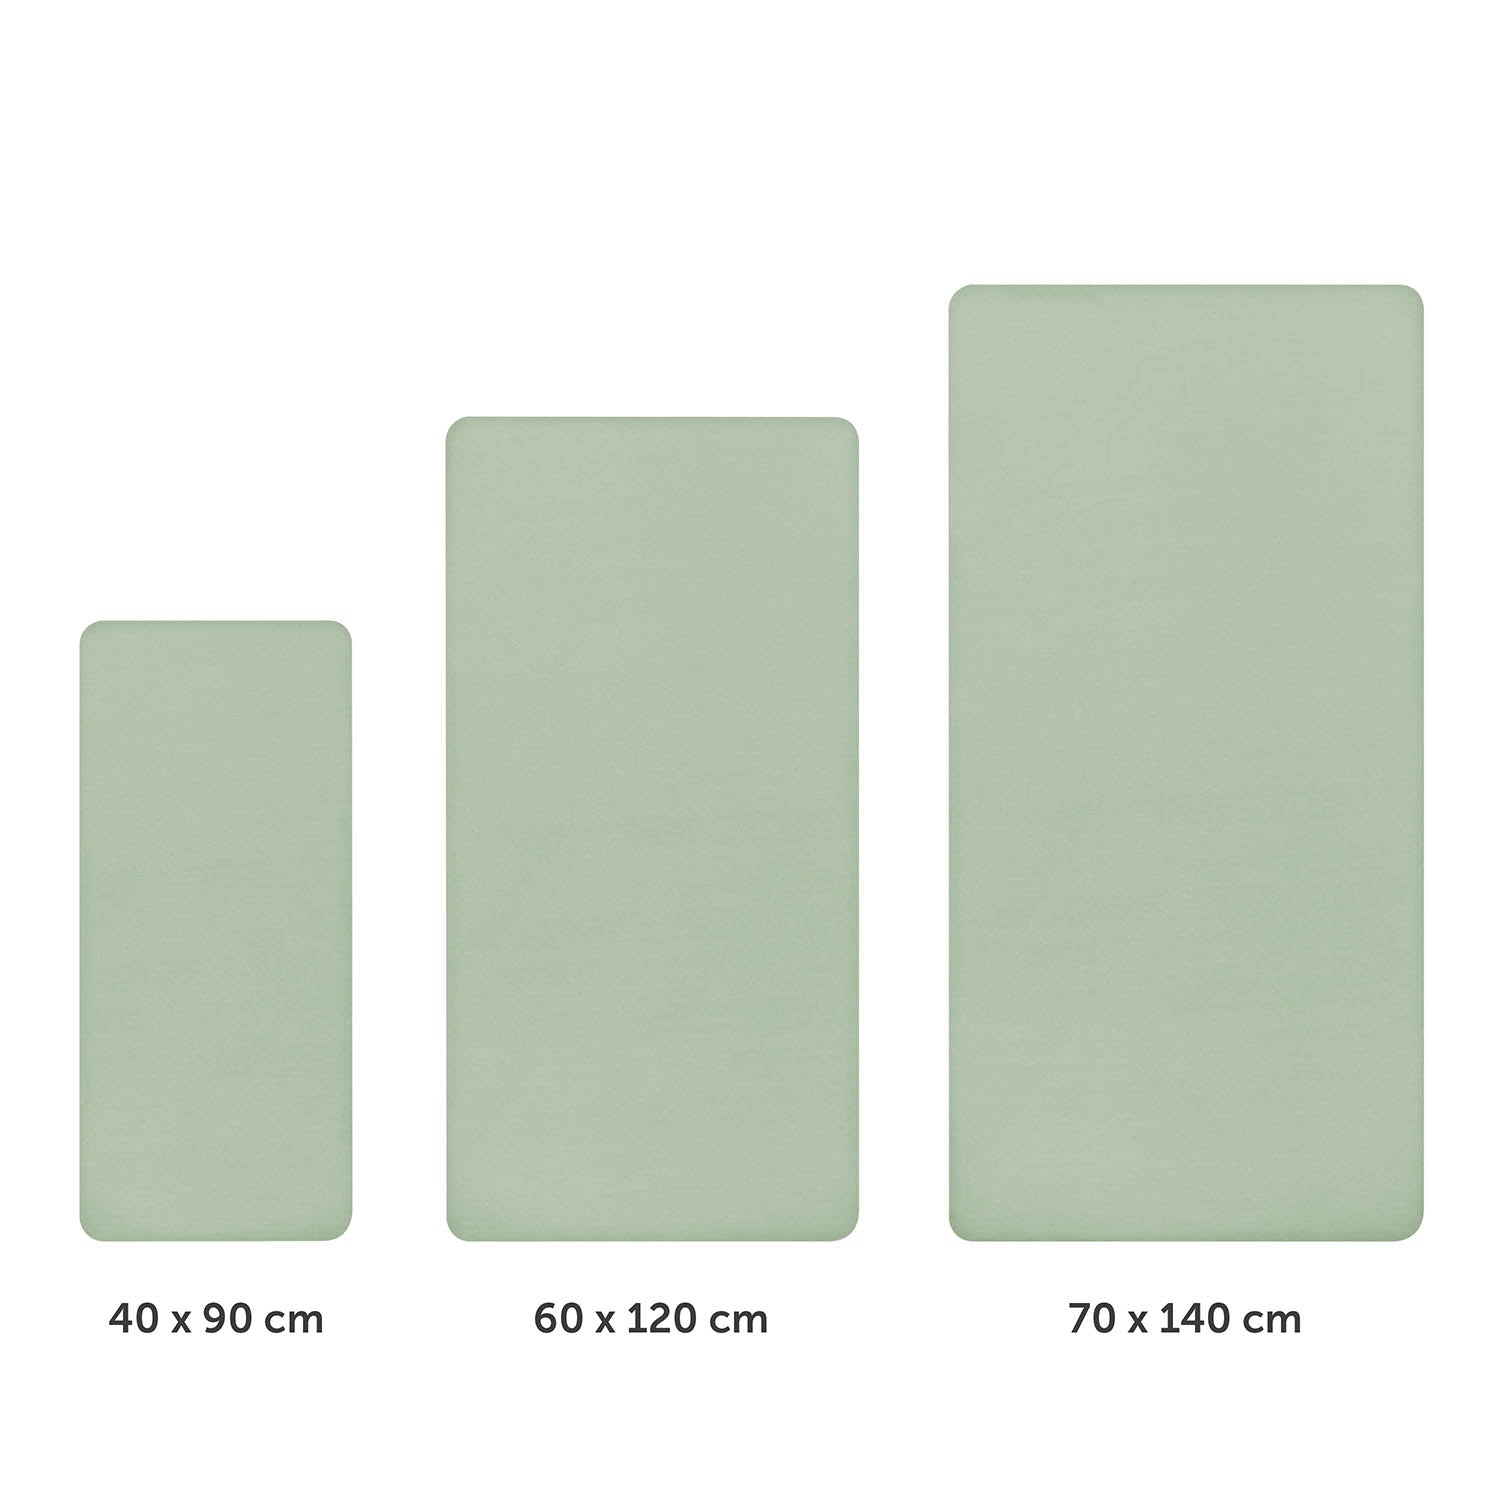 Drei unterschiedlich große grüne Spannbettlaken nebeneinander dargestellt mit Größenangaben 40x90 cm 60x120 cm und 70x140 cm